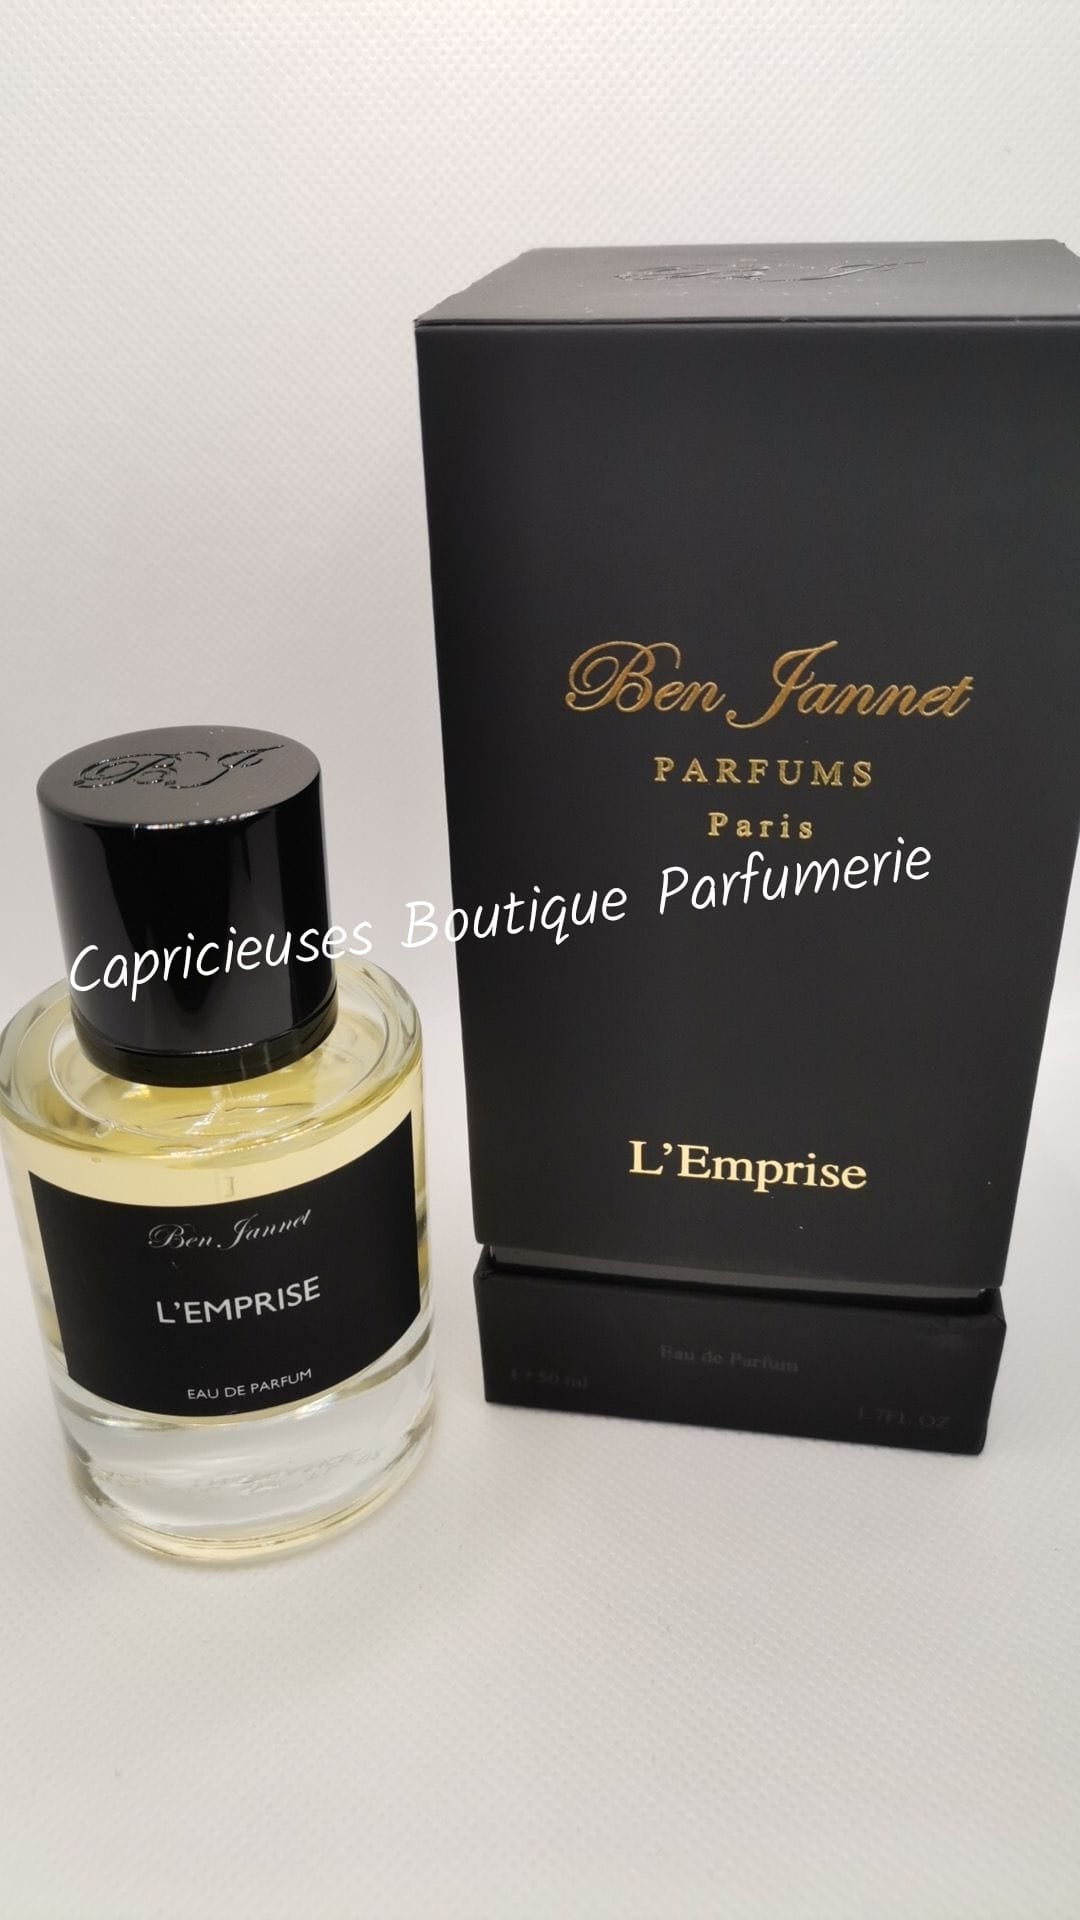 Ben Jannet parfums L'Emprise